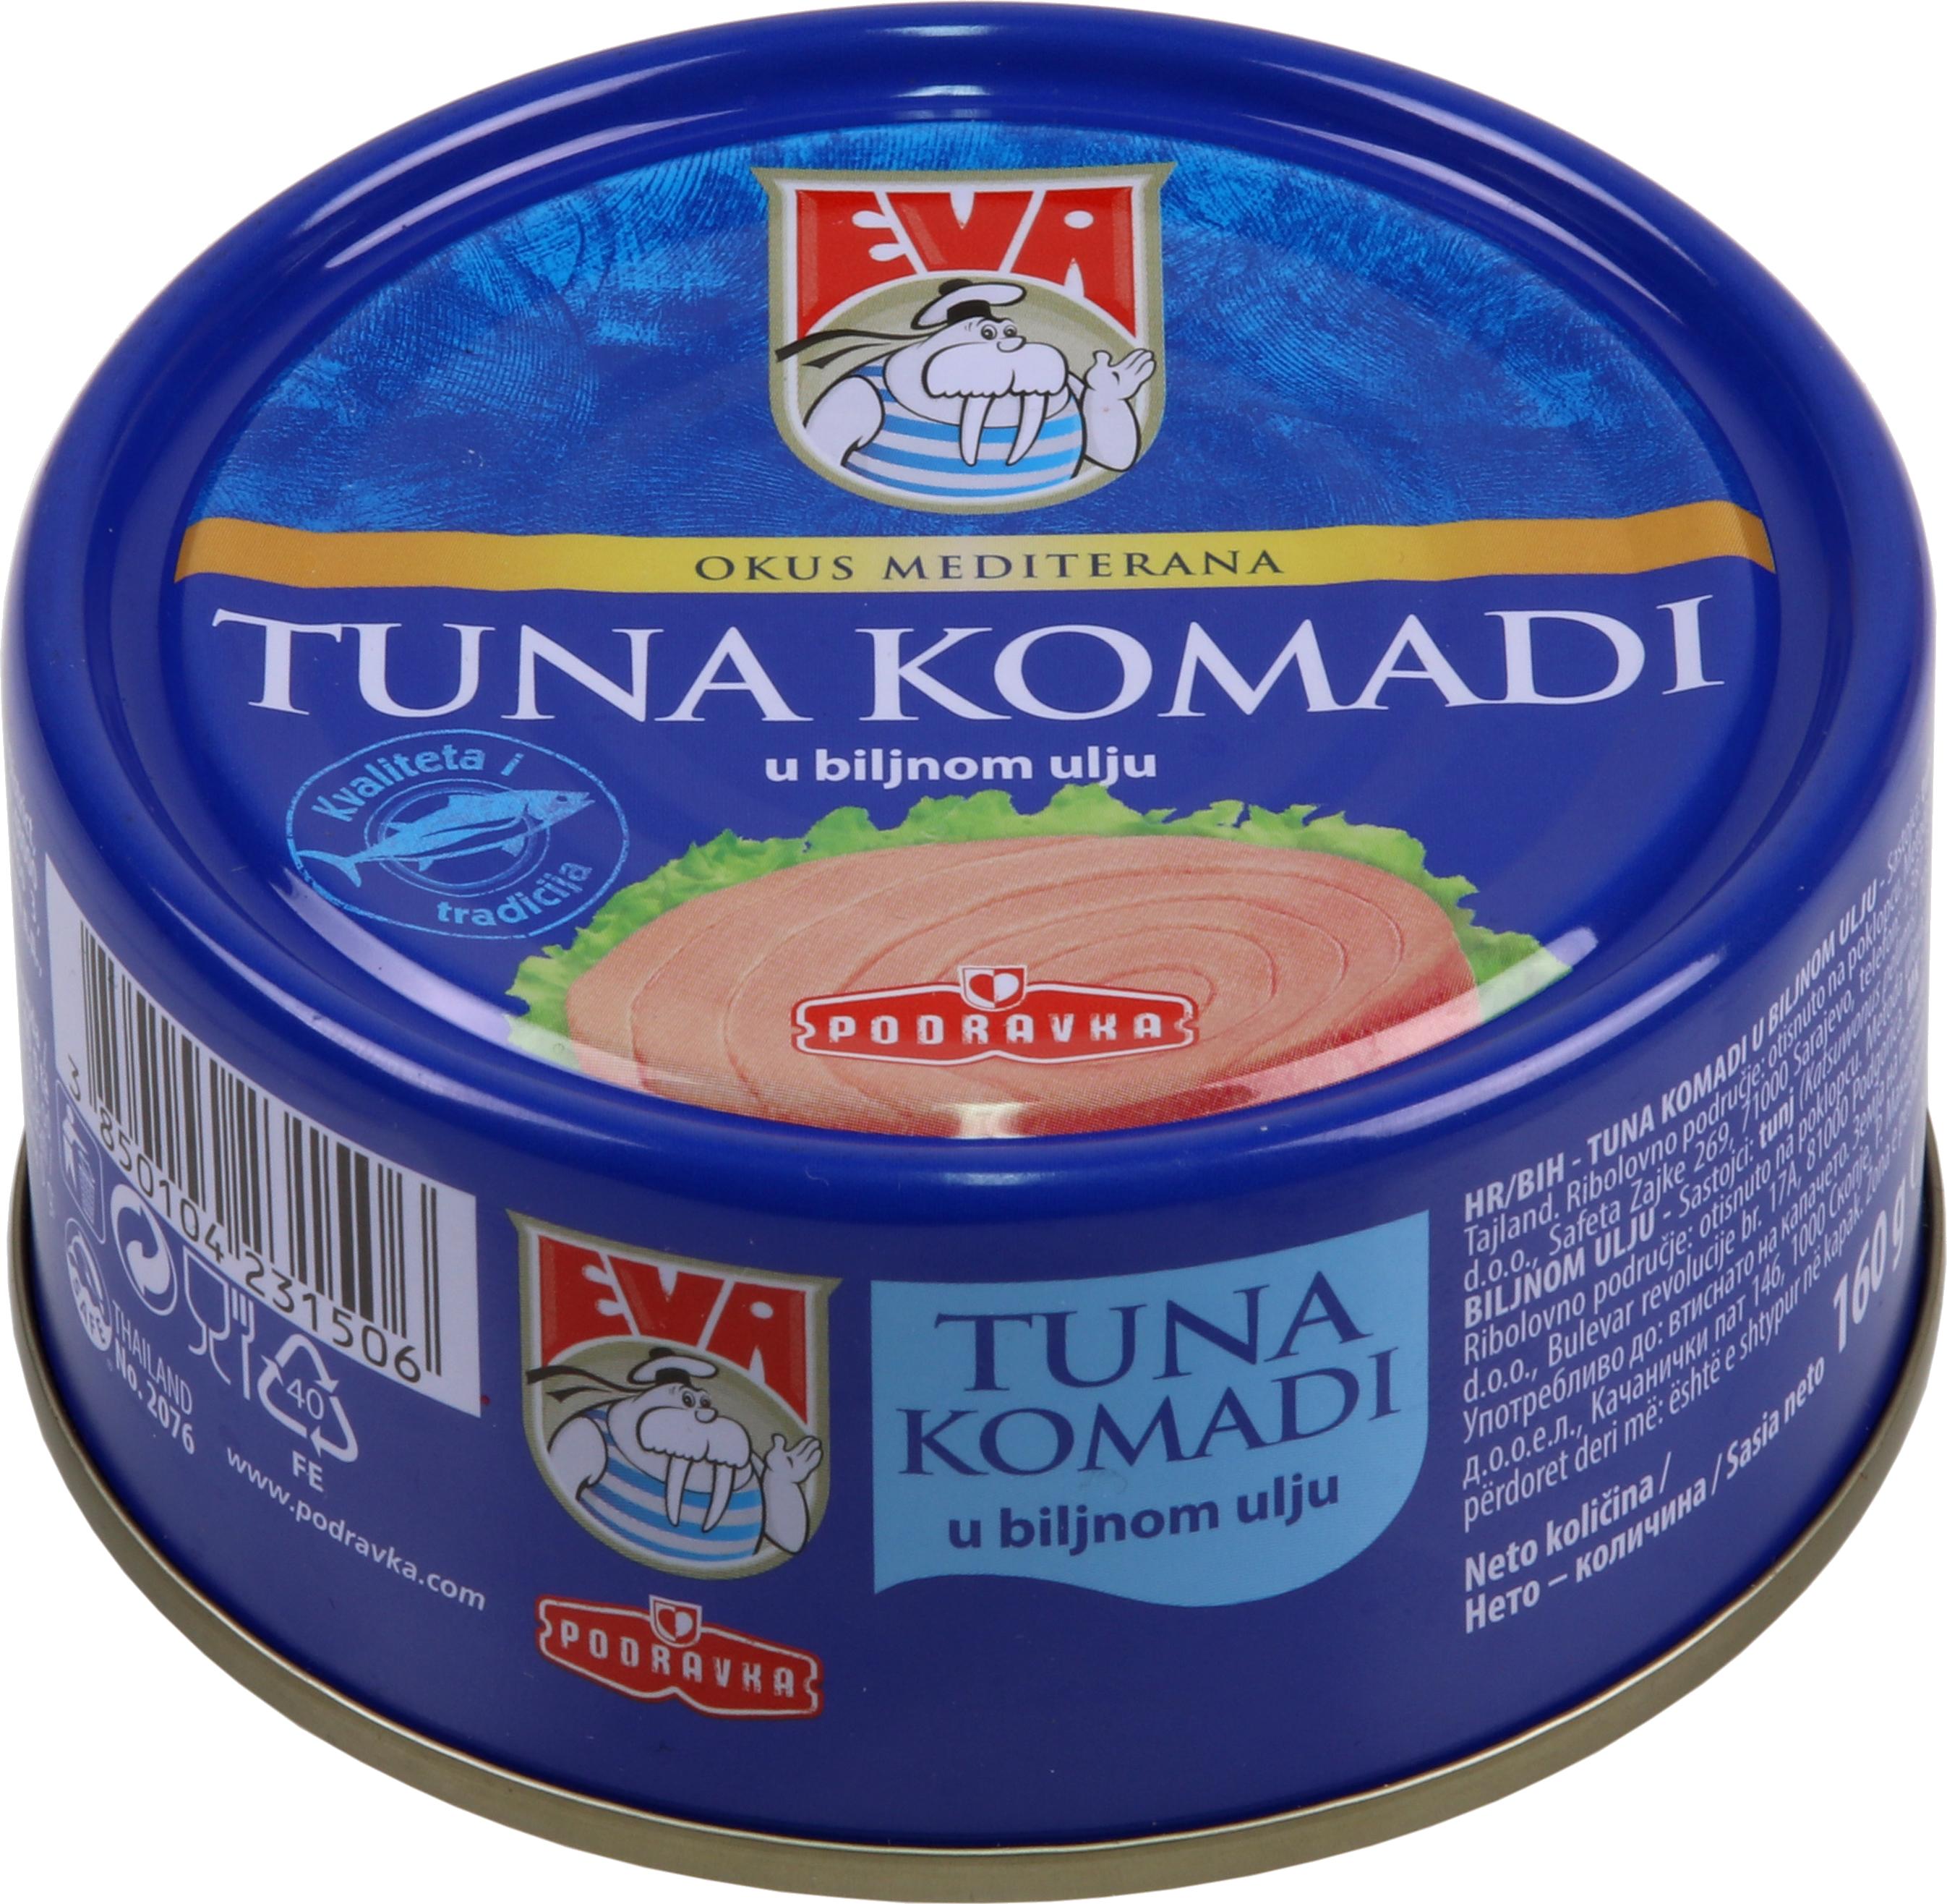 Slika za Tuna komadi u biljnom ulju Eva 160g